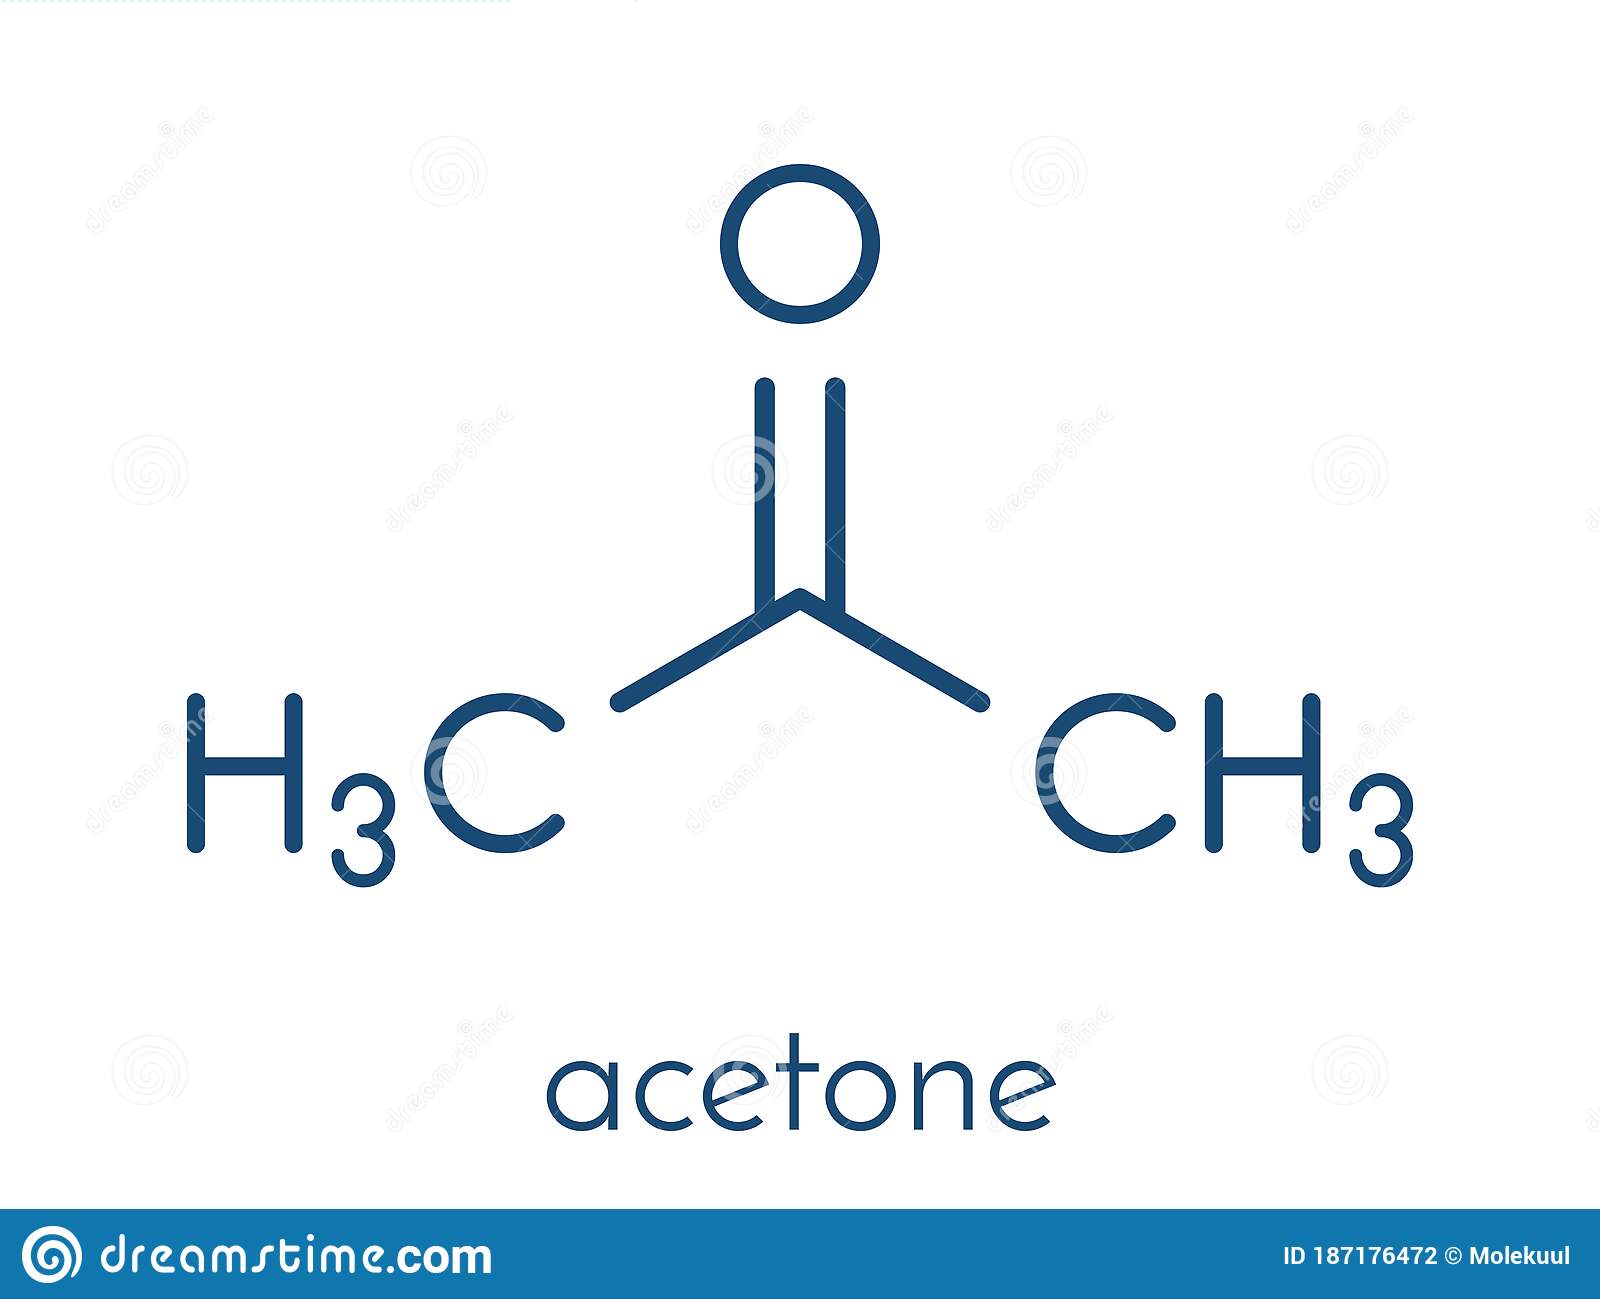 <p>Ex: acetone</p>